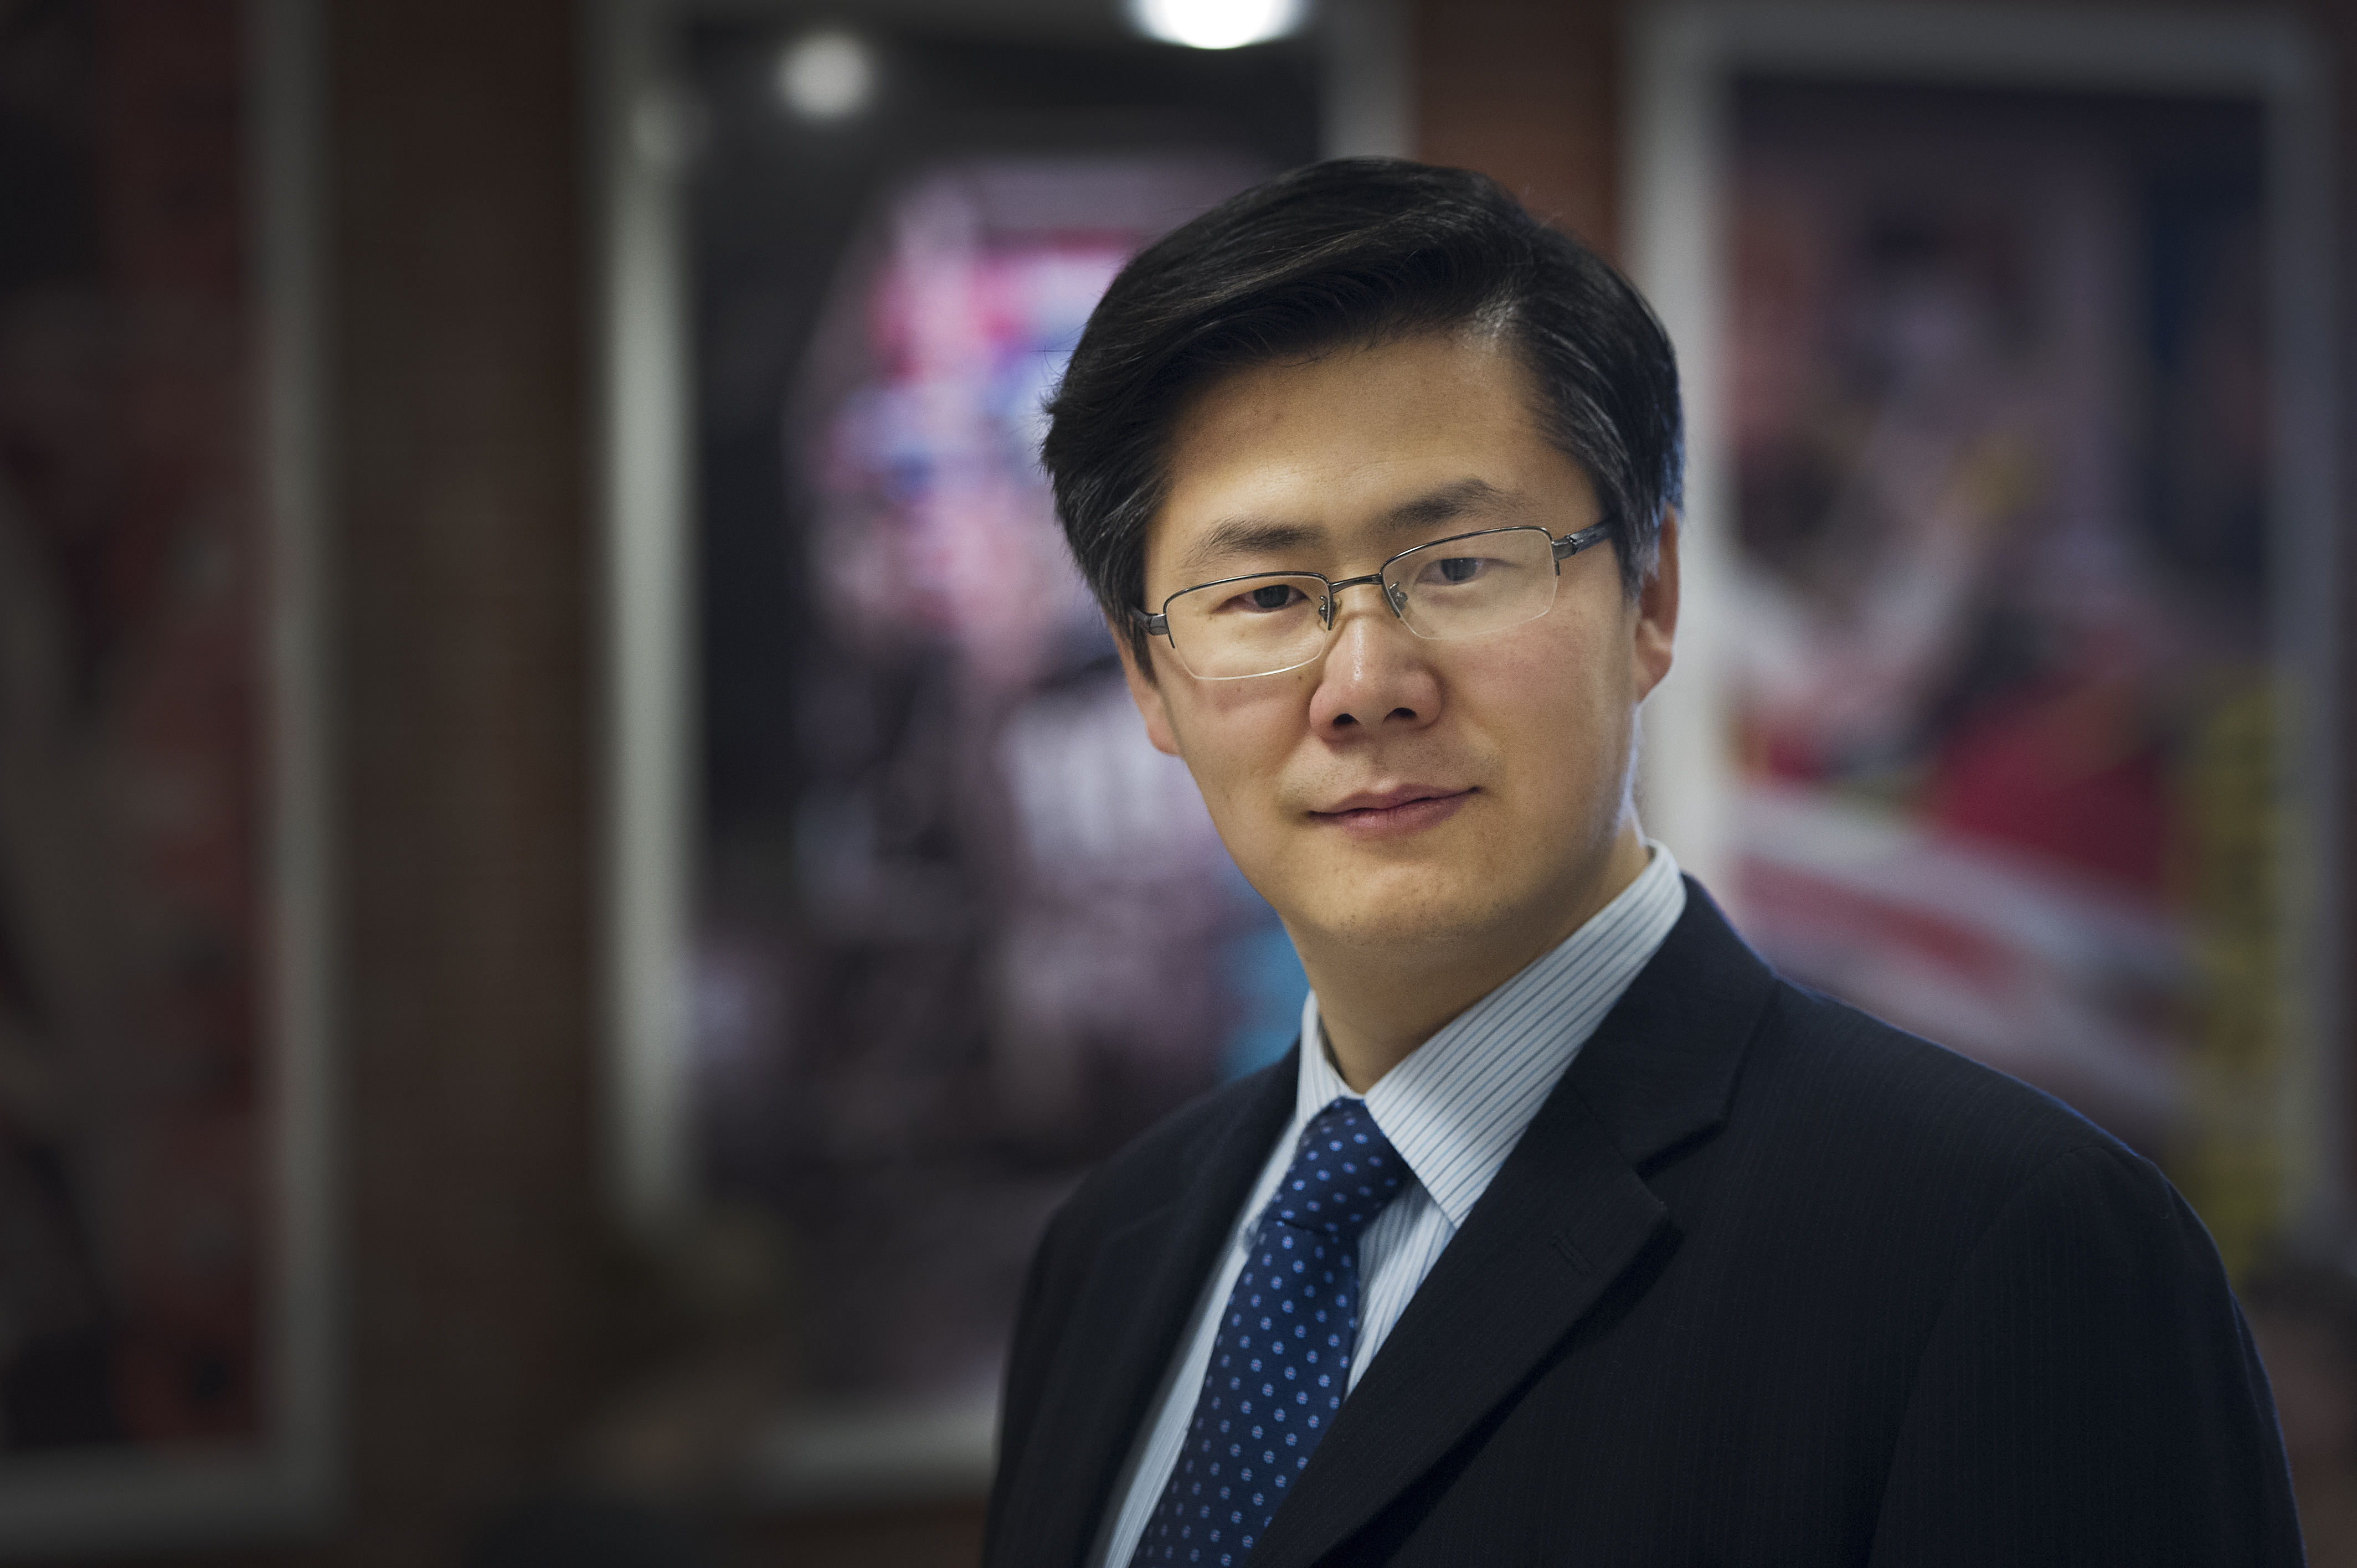 Dr. Bing Chen